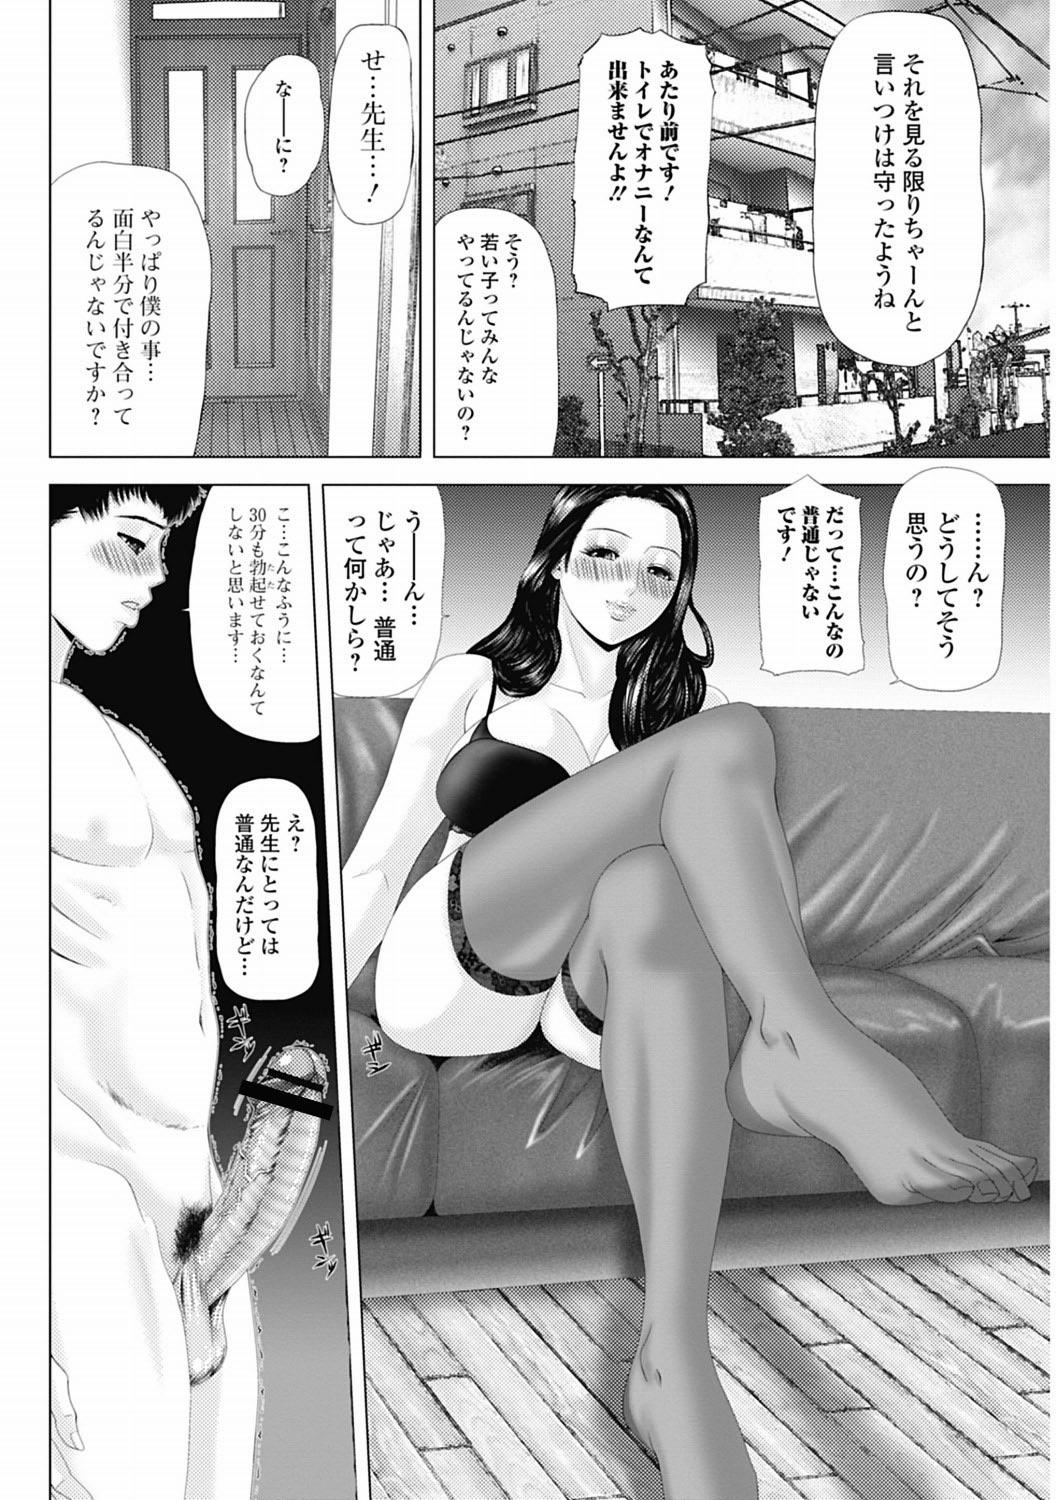 Bishoujo Kakumei KIWAME 2012-04 Vol.19 166